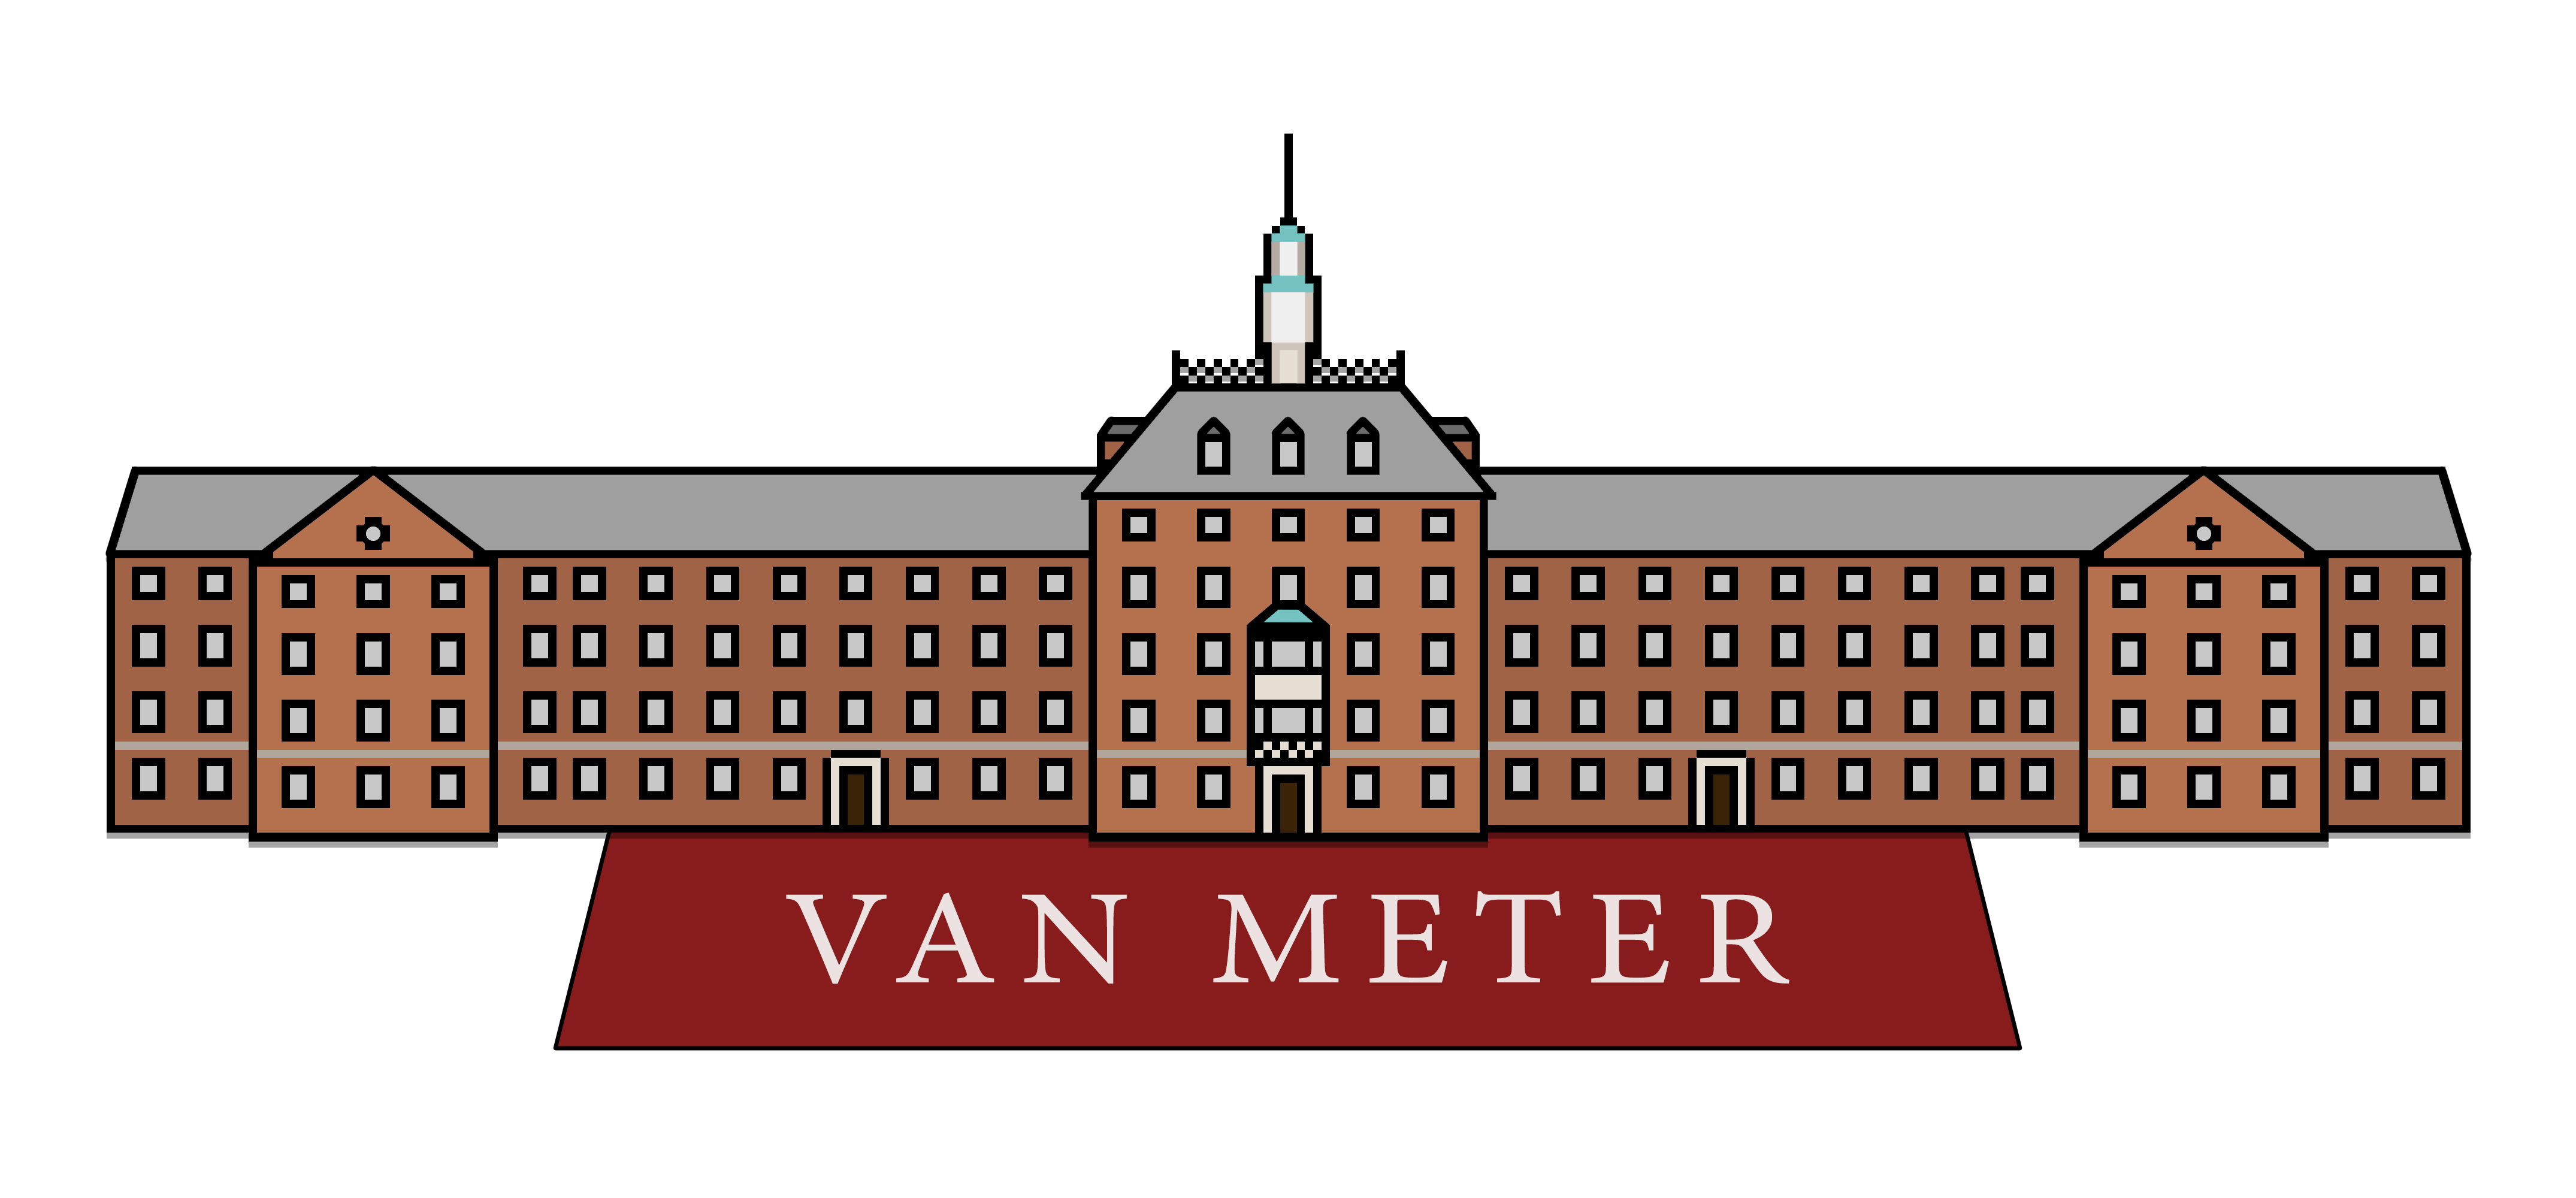 Van Meter House